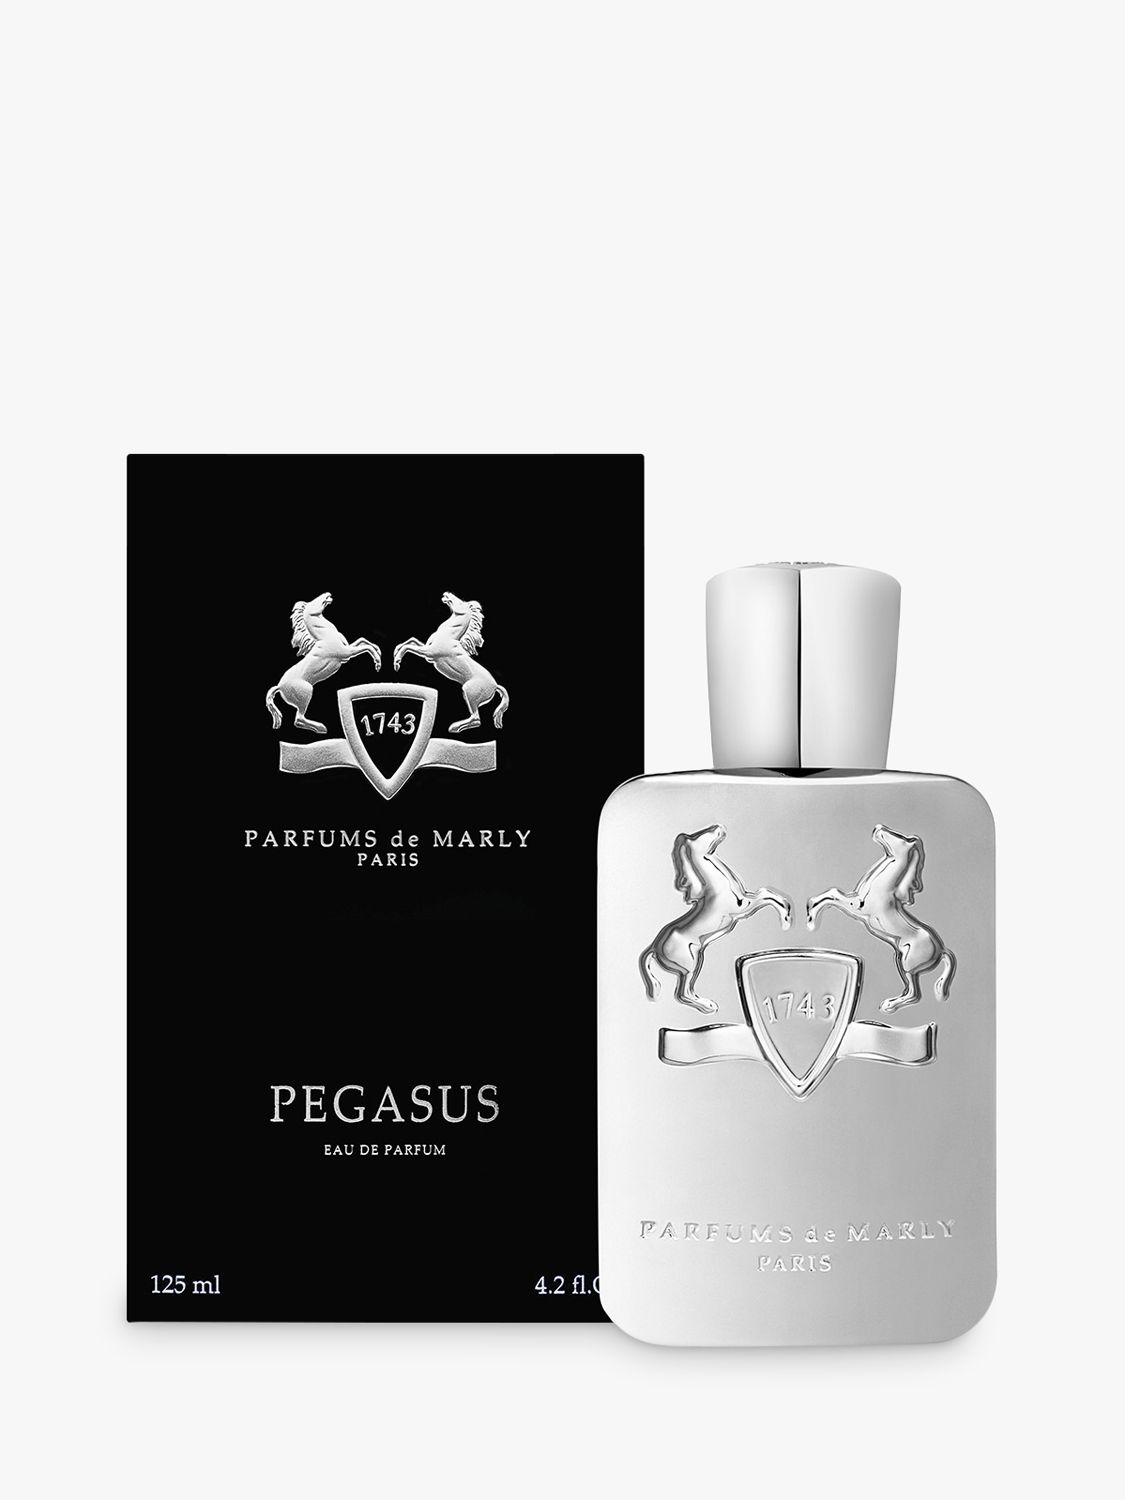 Parfums de Marly Pegasus Eau de Parfum, 125ml